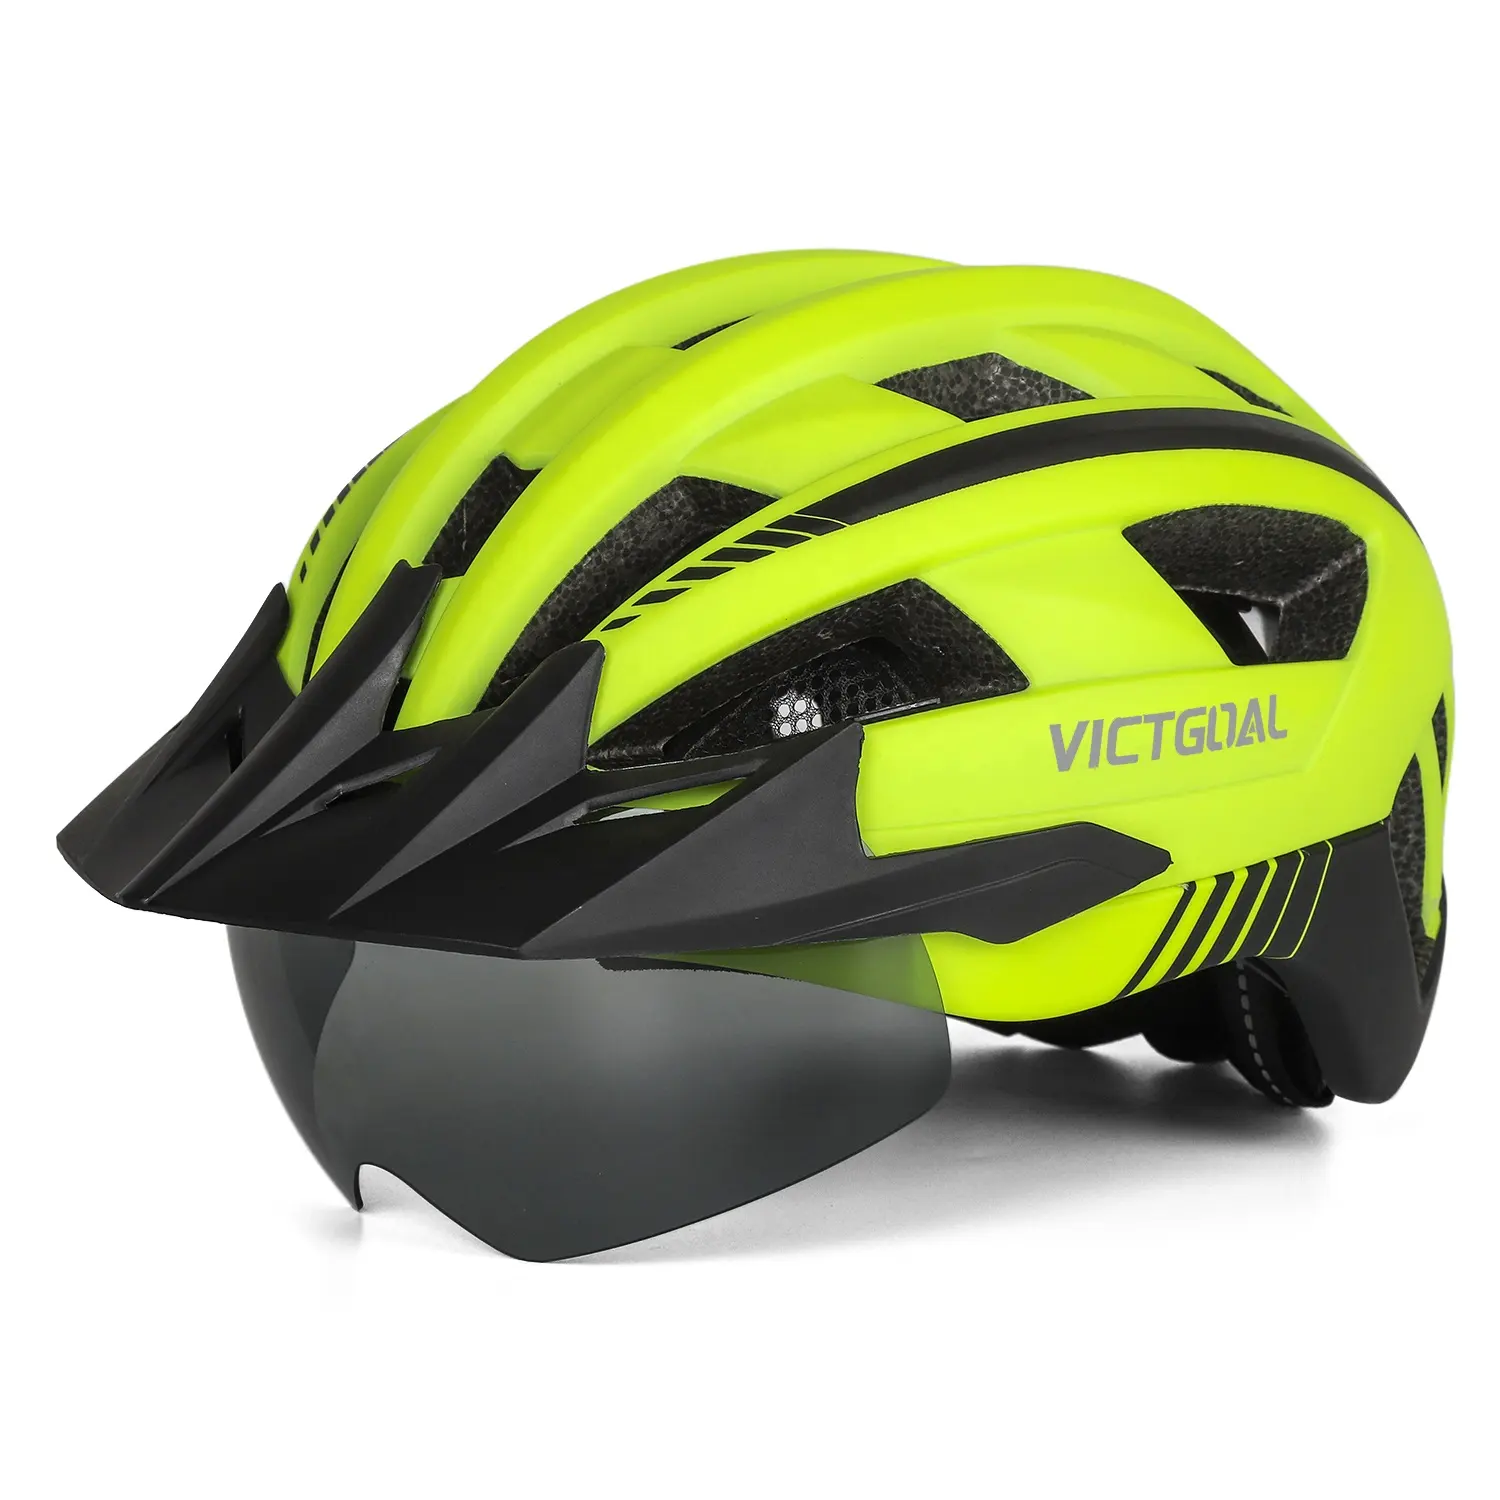 VICTGOAL หมวกกันน็อคจักรยาน LED ชาร์จไฟผ่าน USB,หมวกกันน็อกพร้อมแว่นตาและบังแดดรุ่น OEMODM ขนาดเล็ก UV400